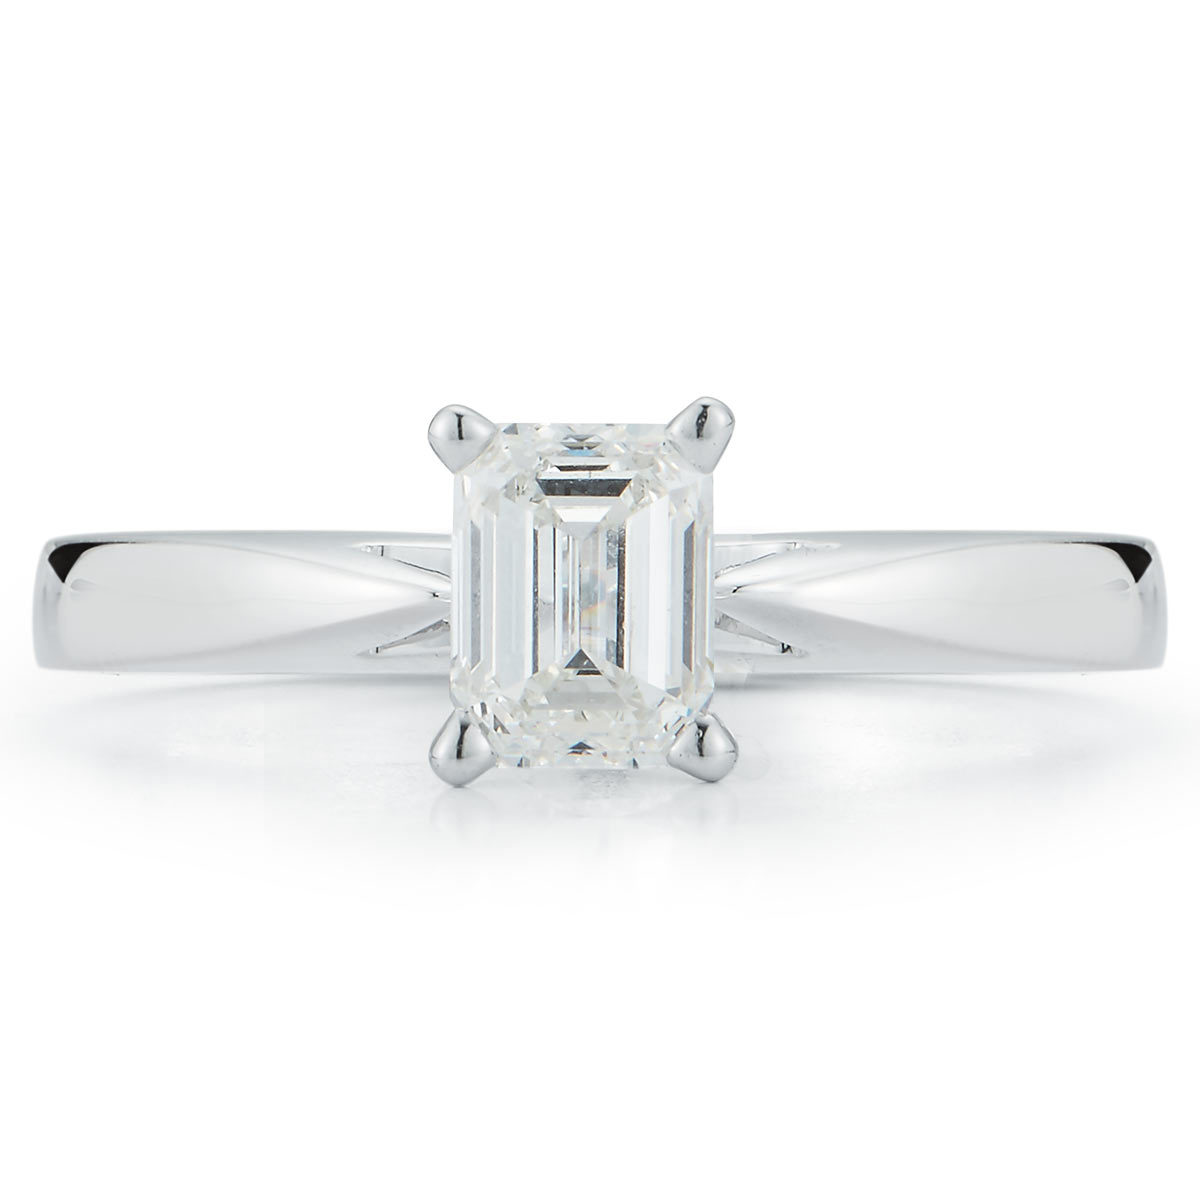 1.0ct Emerald Cut Diamond Solitaire Ring, Platinum